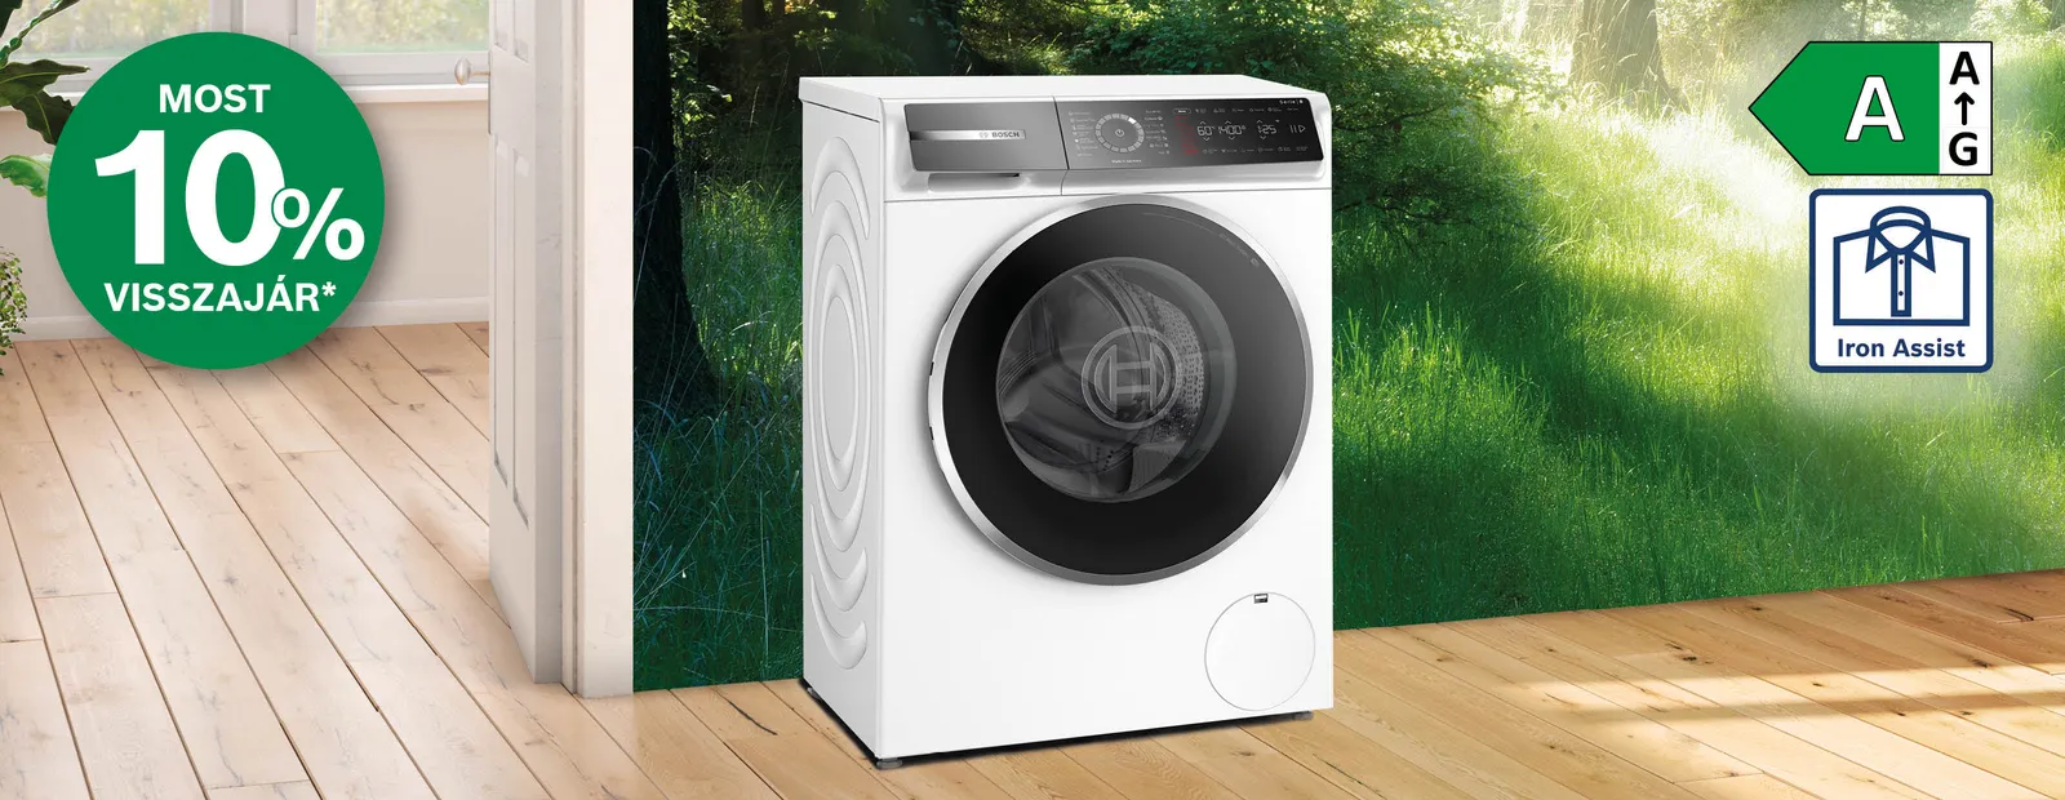 Bosch mosógépek 10% pénzvisszatérítéssel